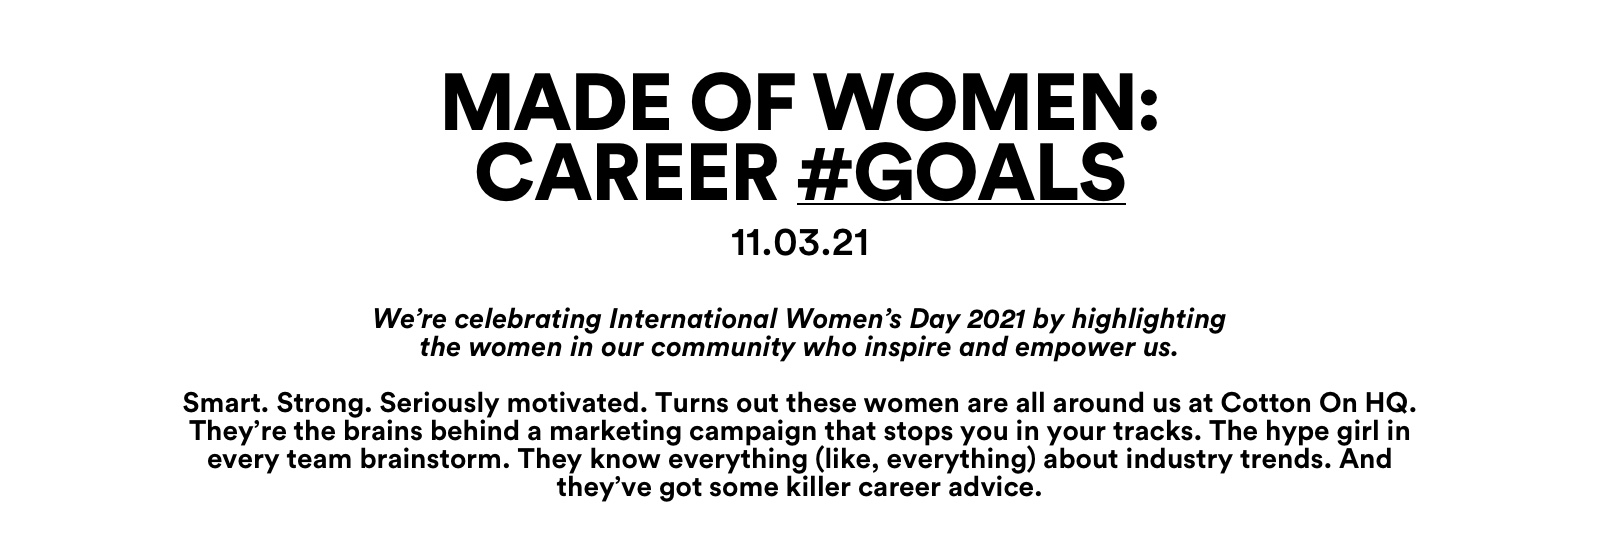 Made of Women: Career #Goals.